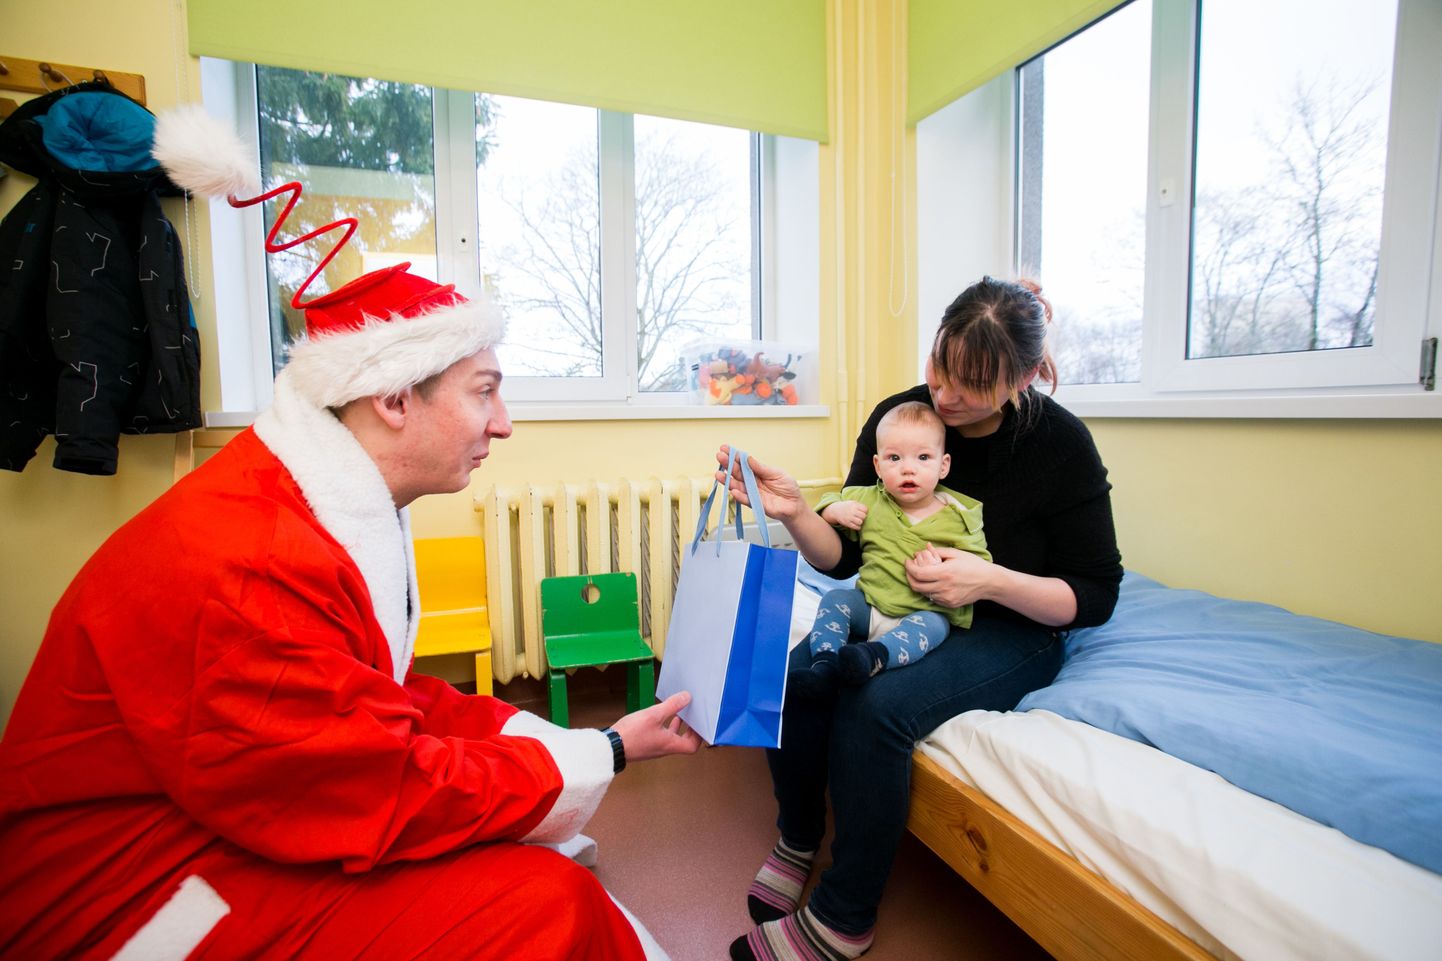 MTÜ Naerta Ometi  projekt "Jõulud haiglas 2014". Jõuluvana Gert Karu jagas jõulukingitusi Järvamaa haigla lasteosakonnas. Pildil Sten (5k) koos ema Monikaga.